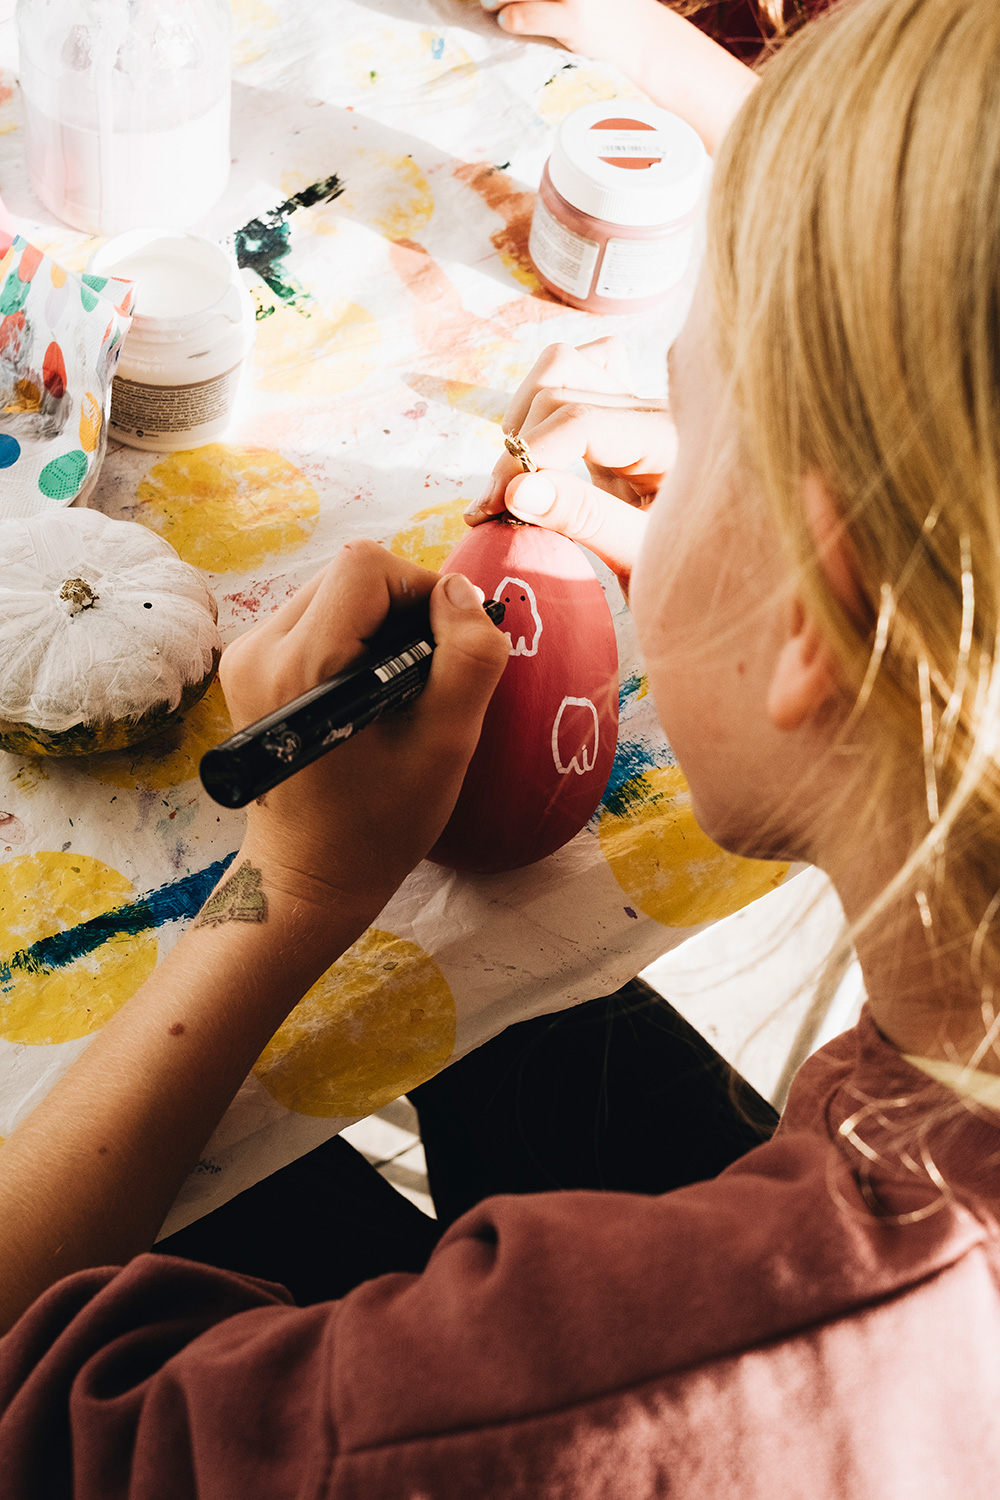 Pintar en lugar de tallar: ¡Hacer arte con calabazas!